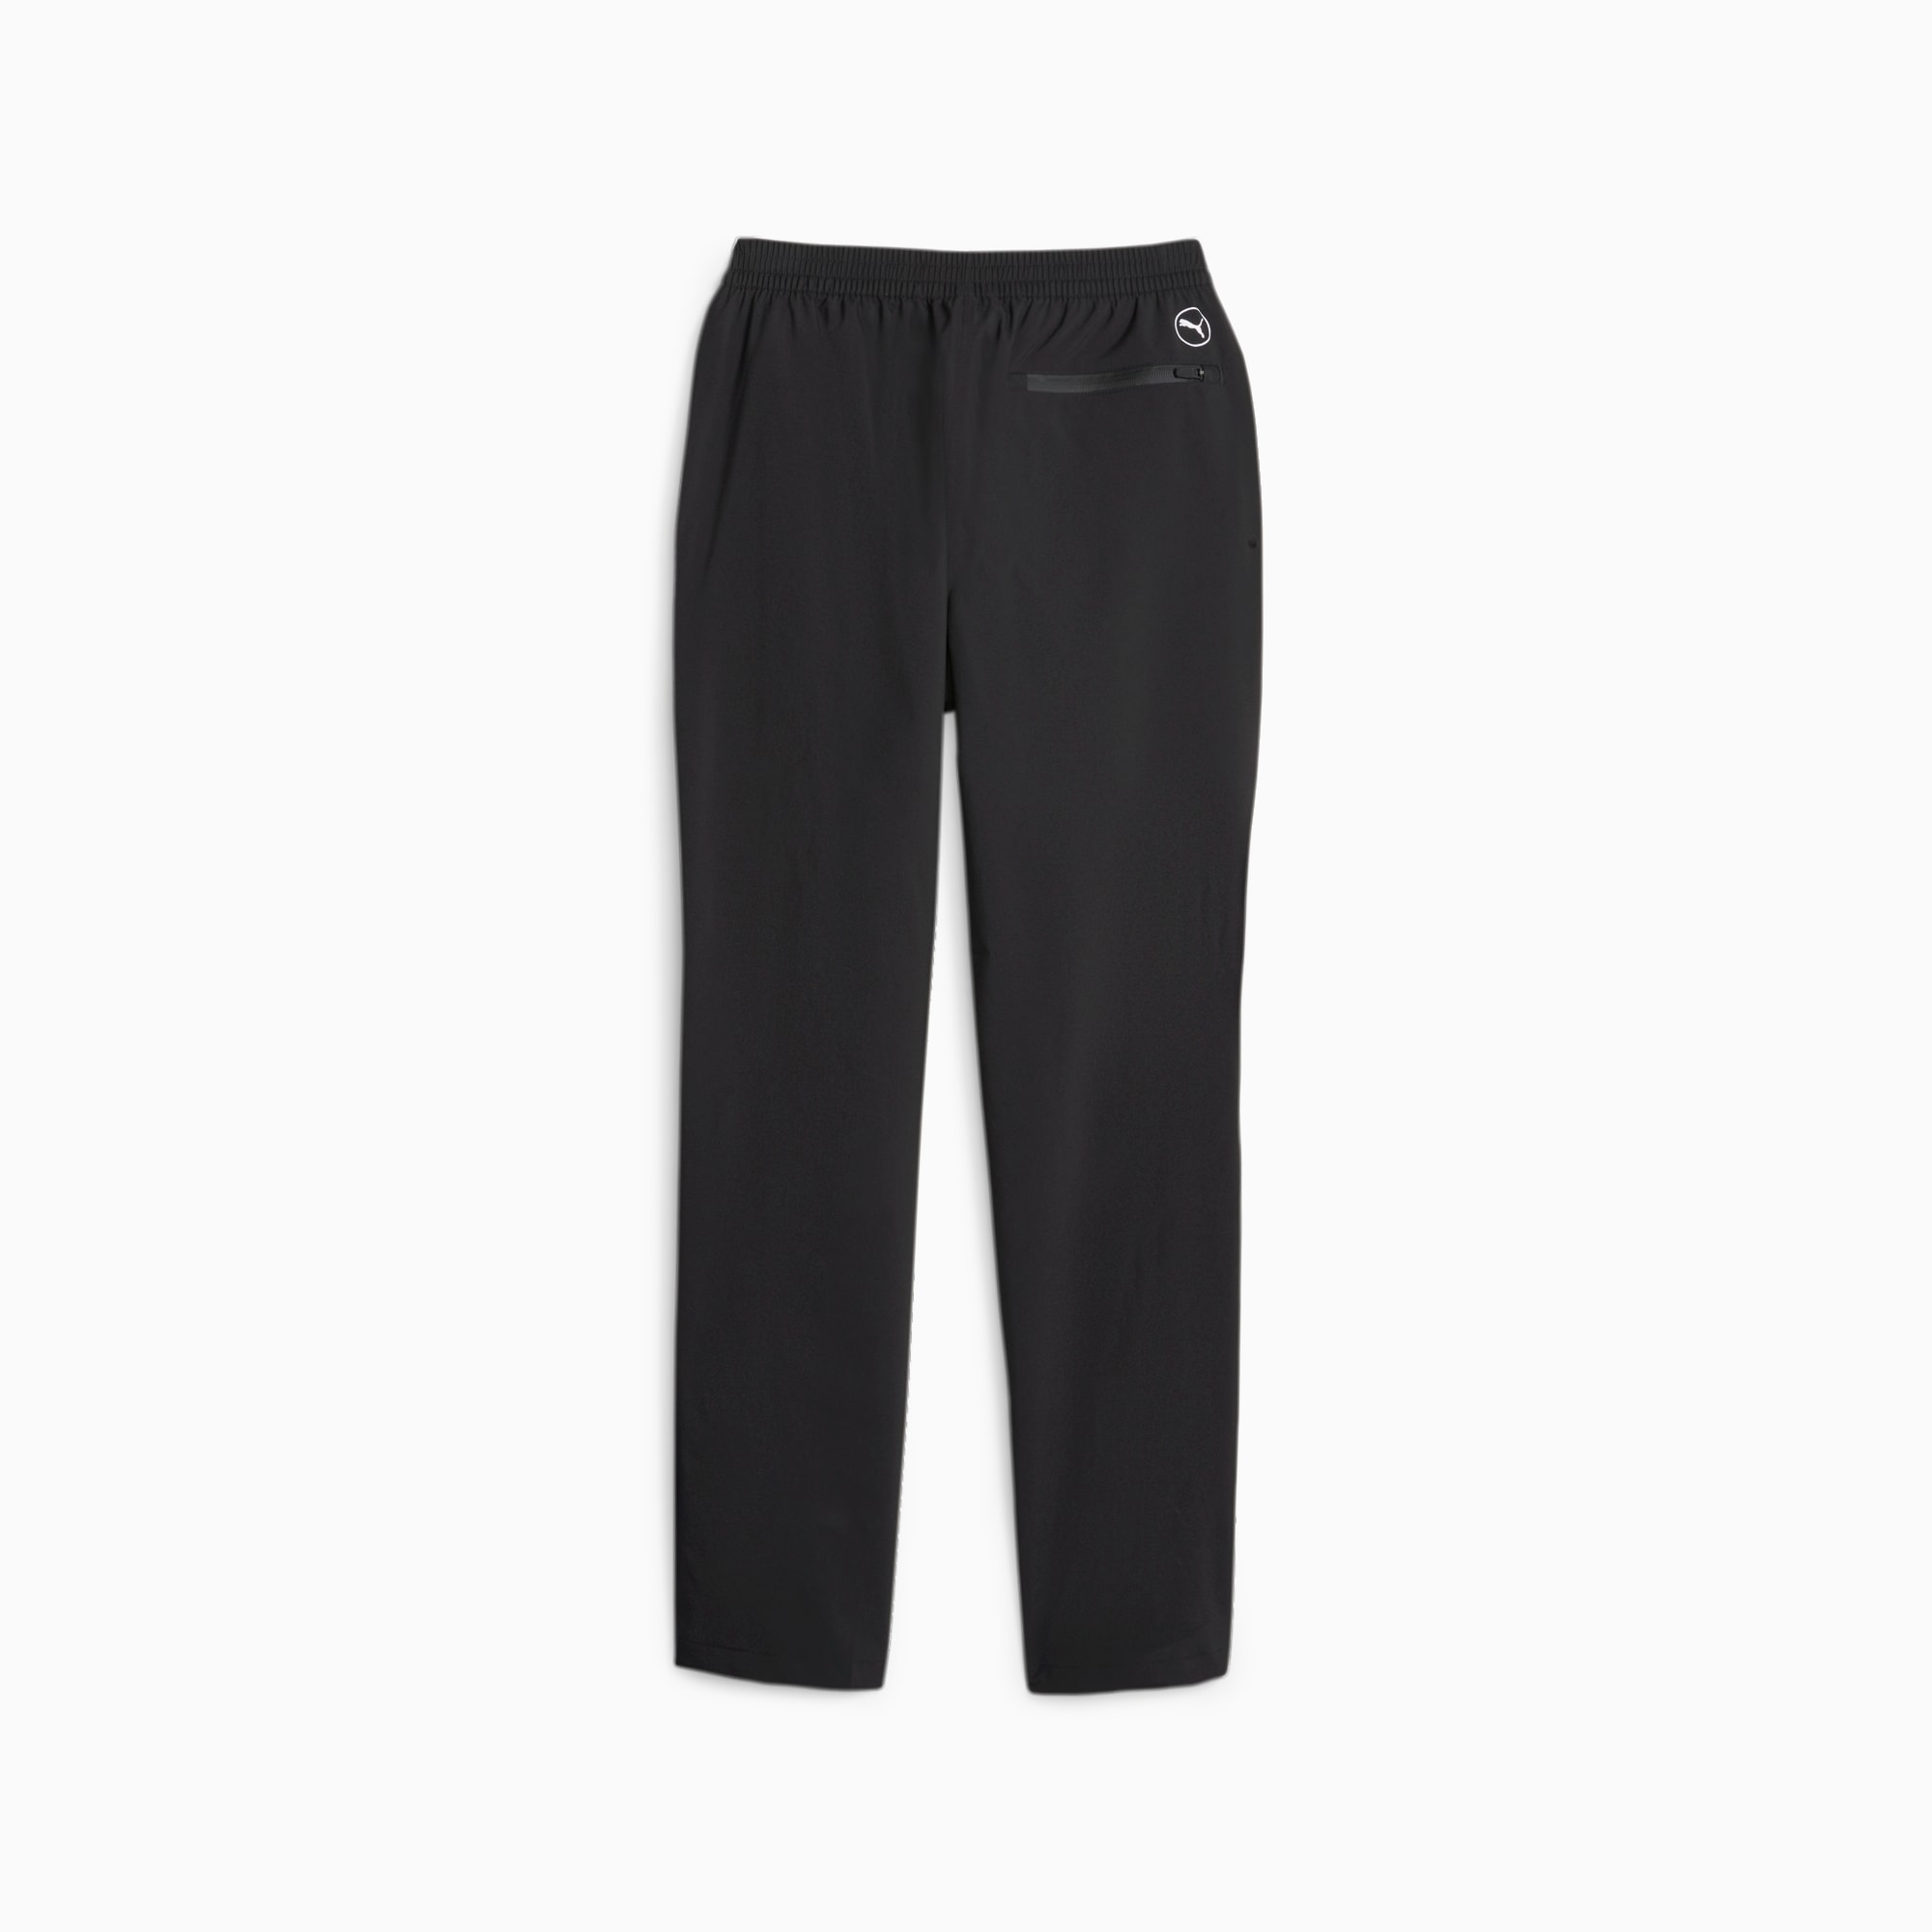 PUMA Drylbl Men's Rain Pants, Black, Size L/S, Clothing